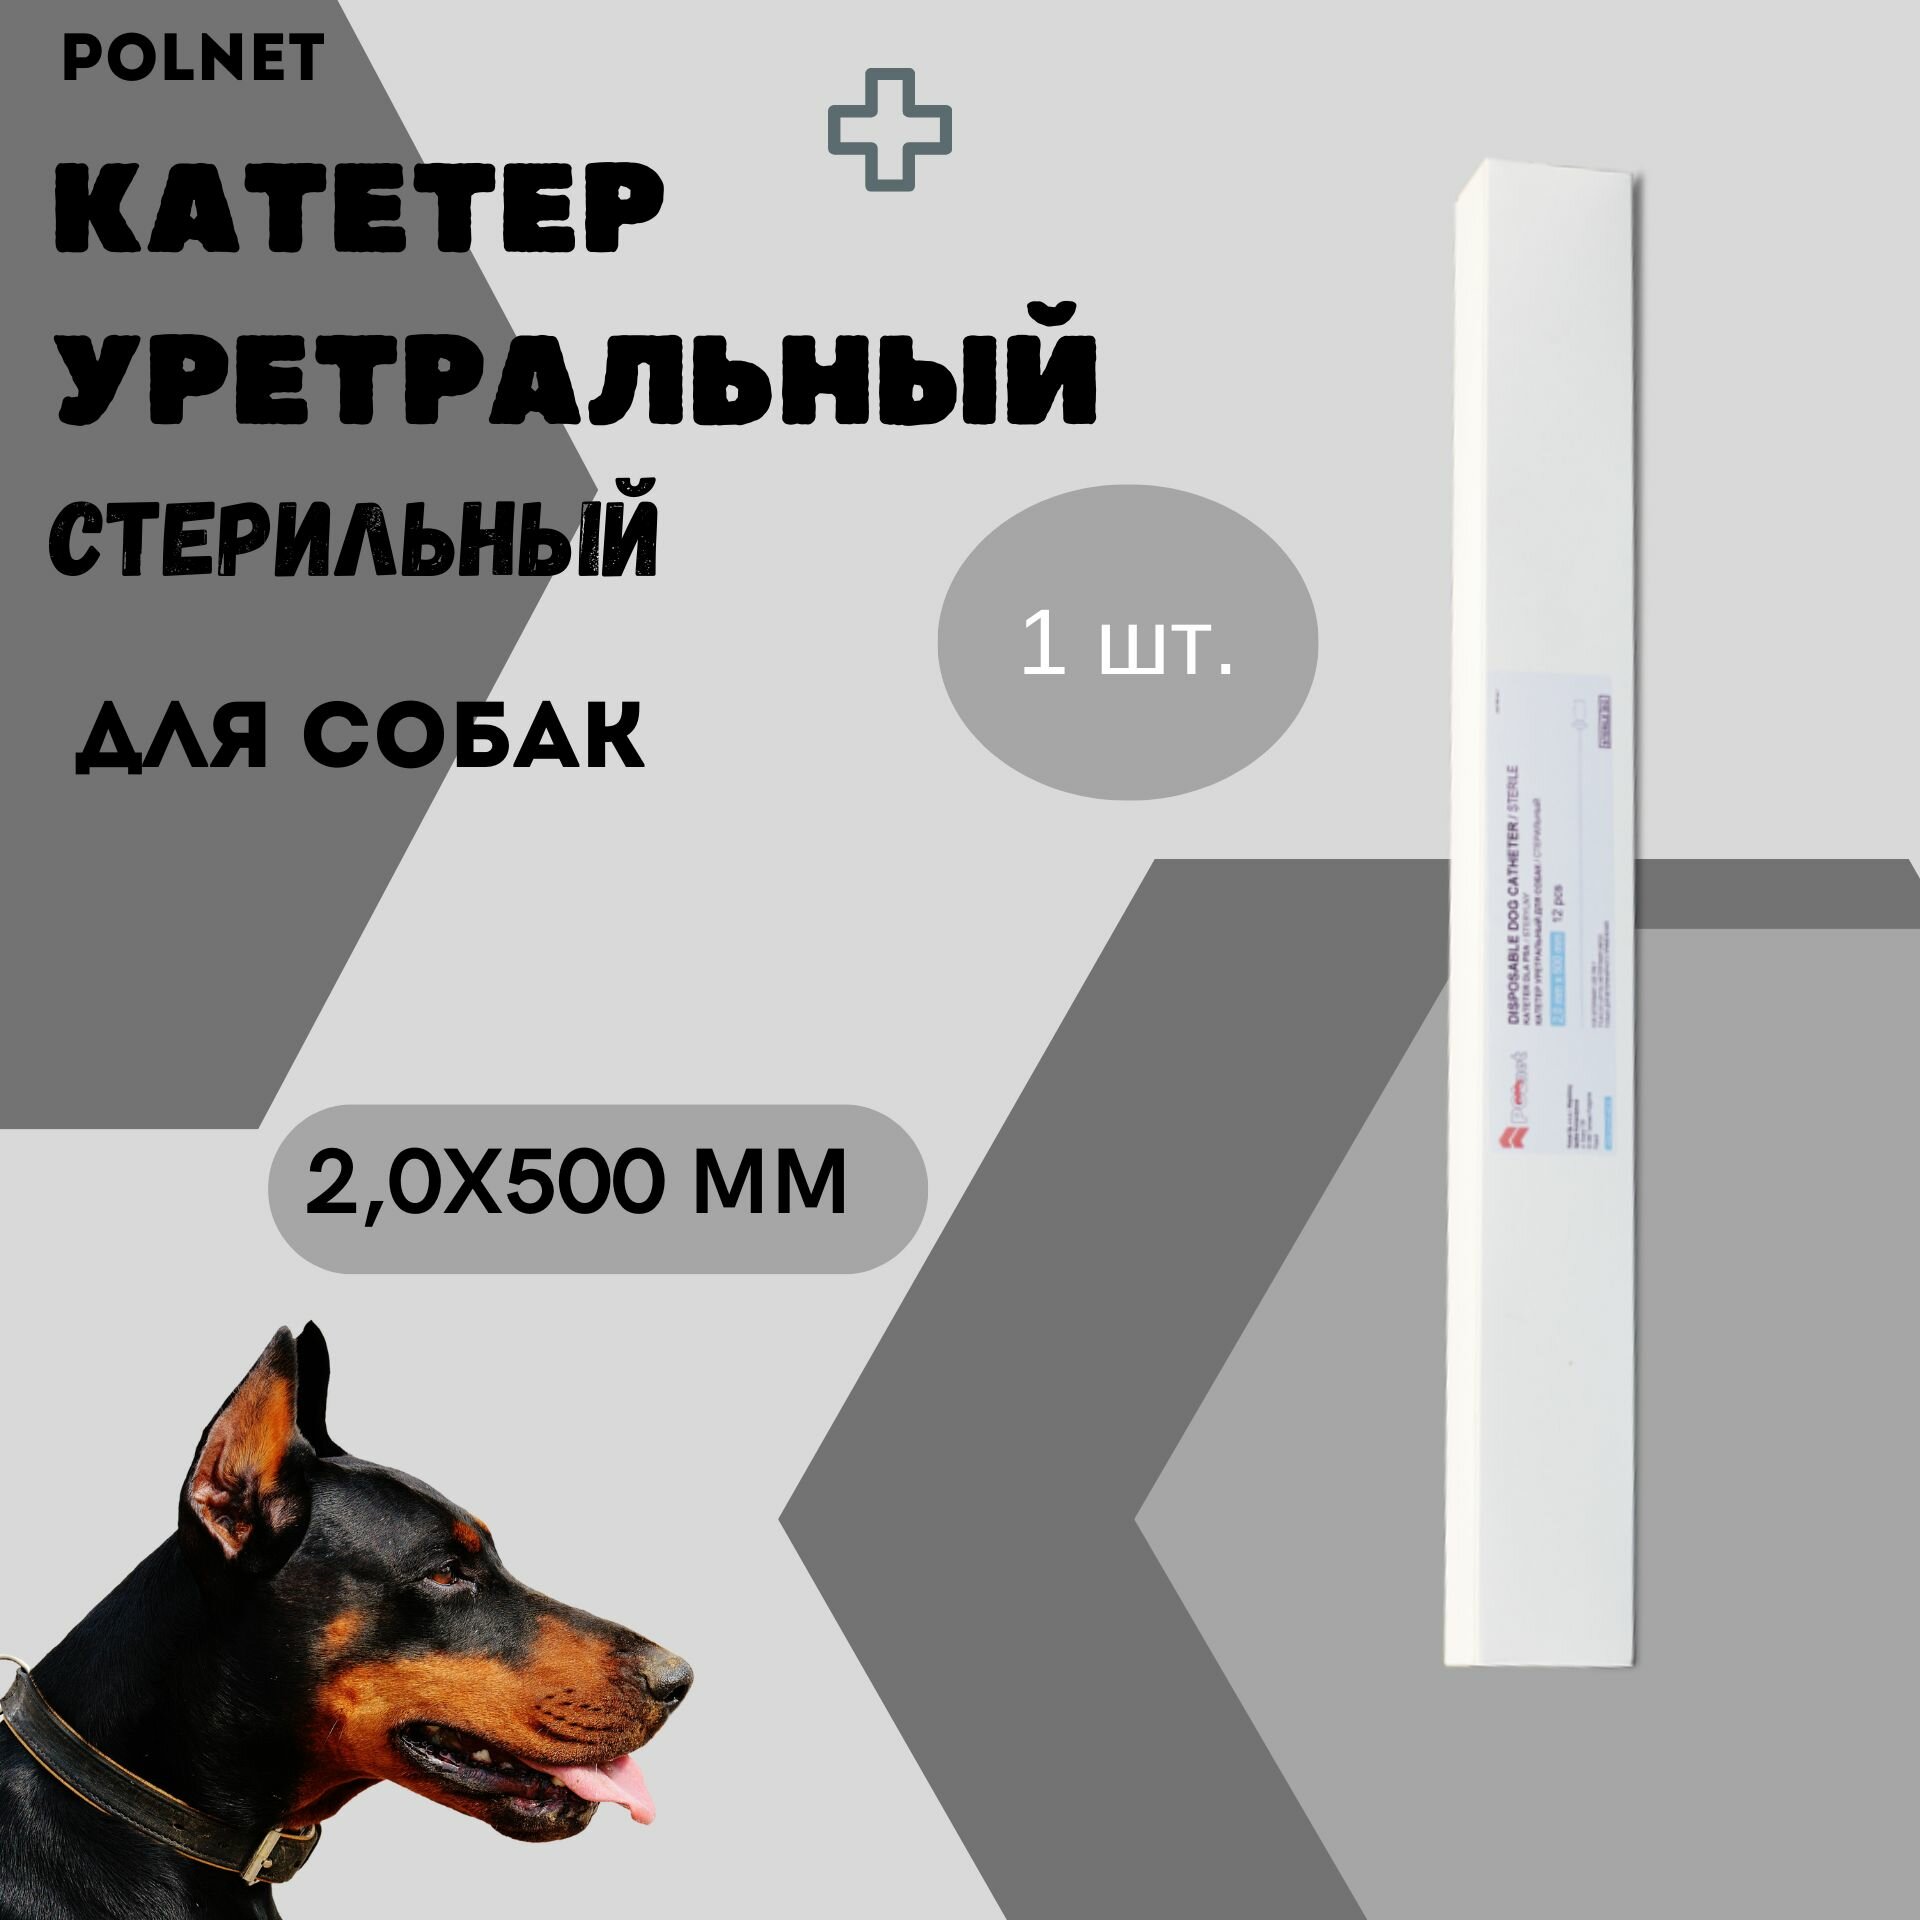 Катетер уретральный POLNET стерильный для собак 2,0х500 мм, 1 шт.